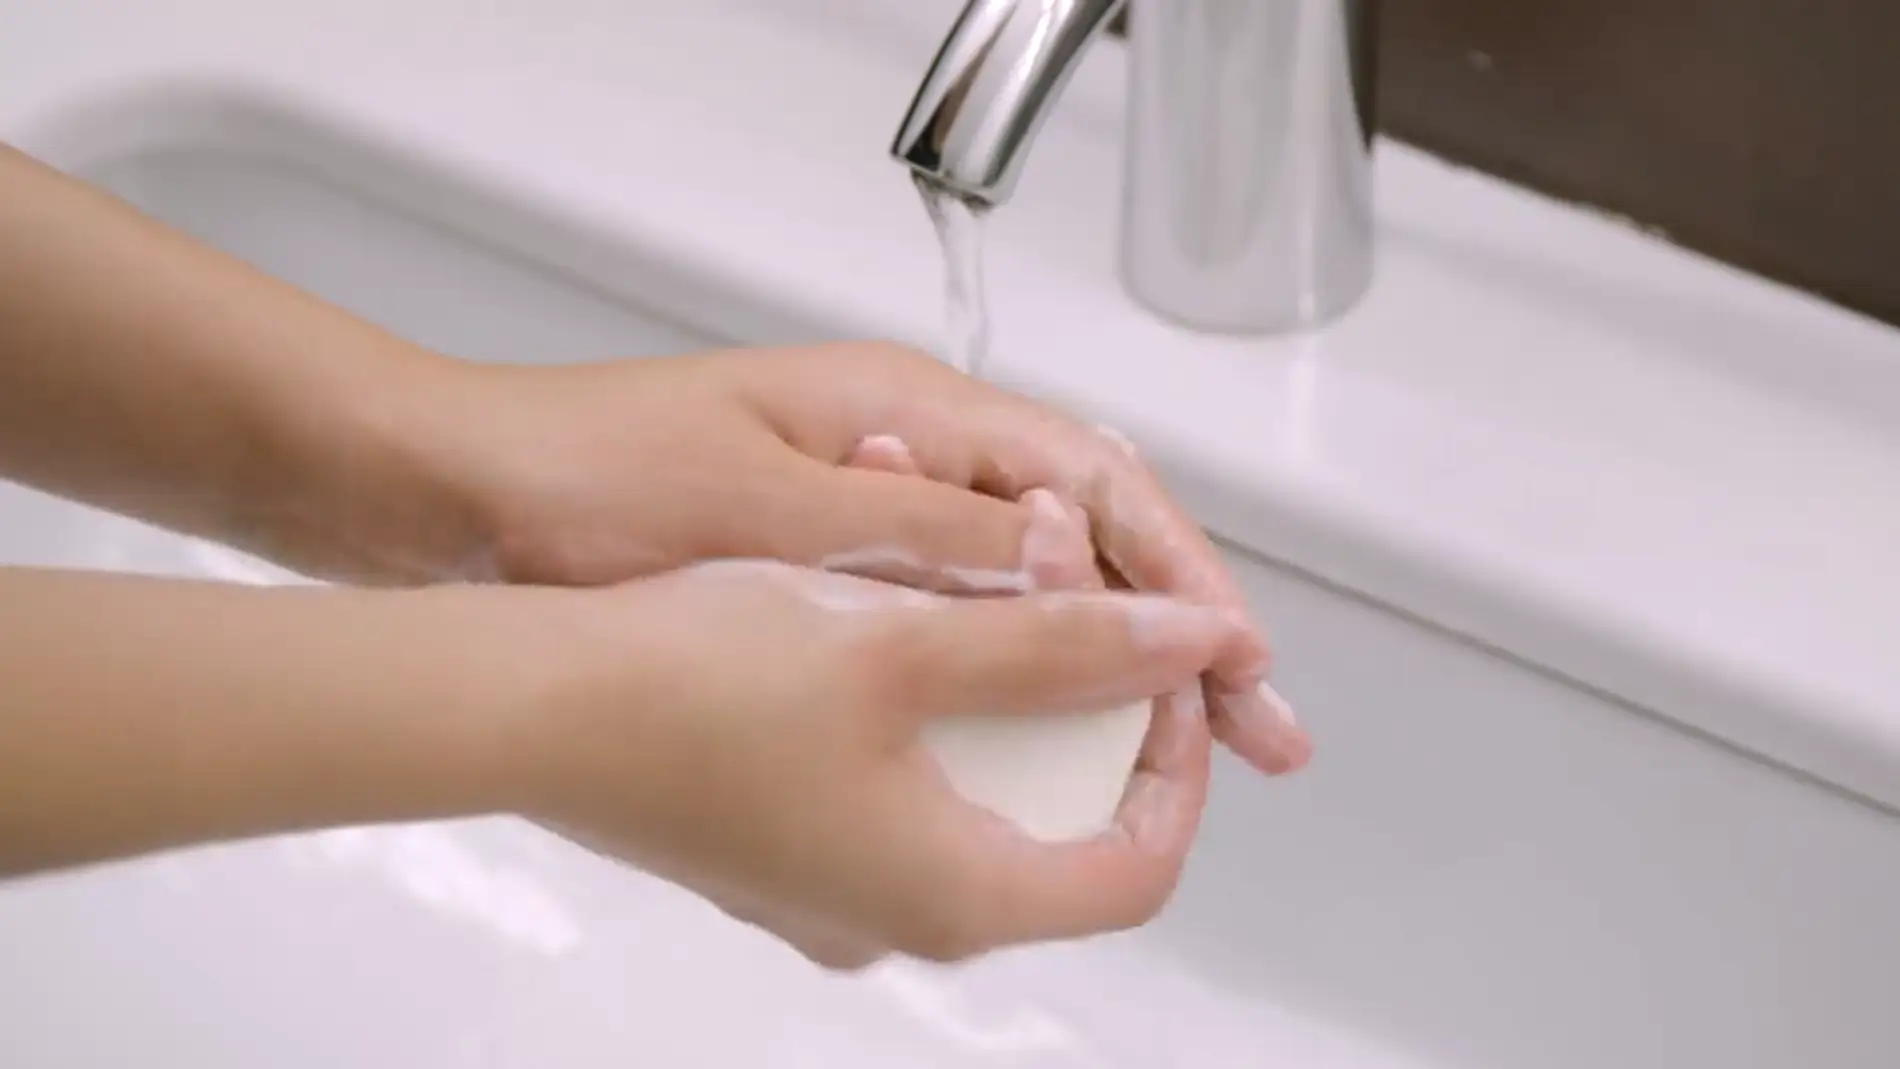 Jabón o gel desinfectante: ¿qué es mejor para lavarse las manos? title=